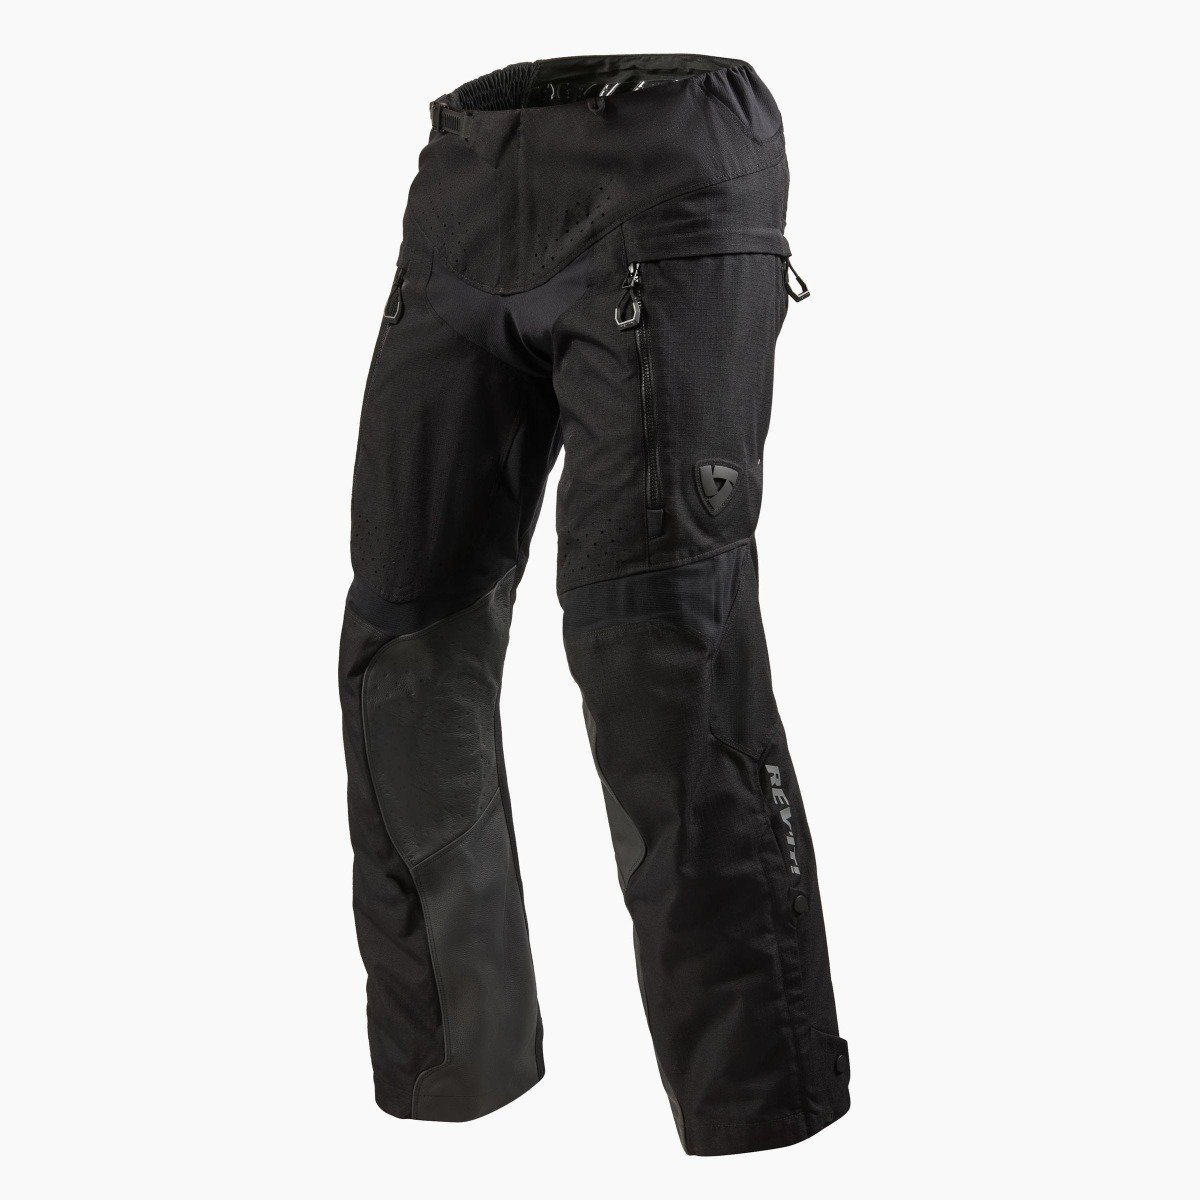 Image of REV'IT! Continent Short Black Motorcycle Pants Size XL EN